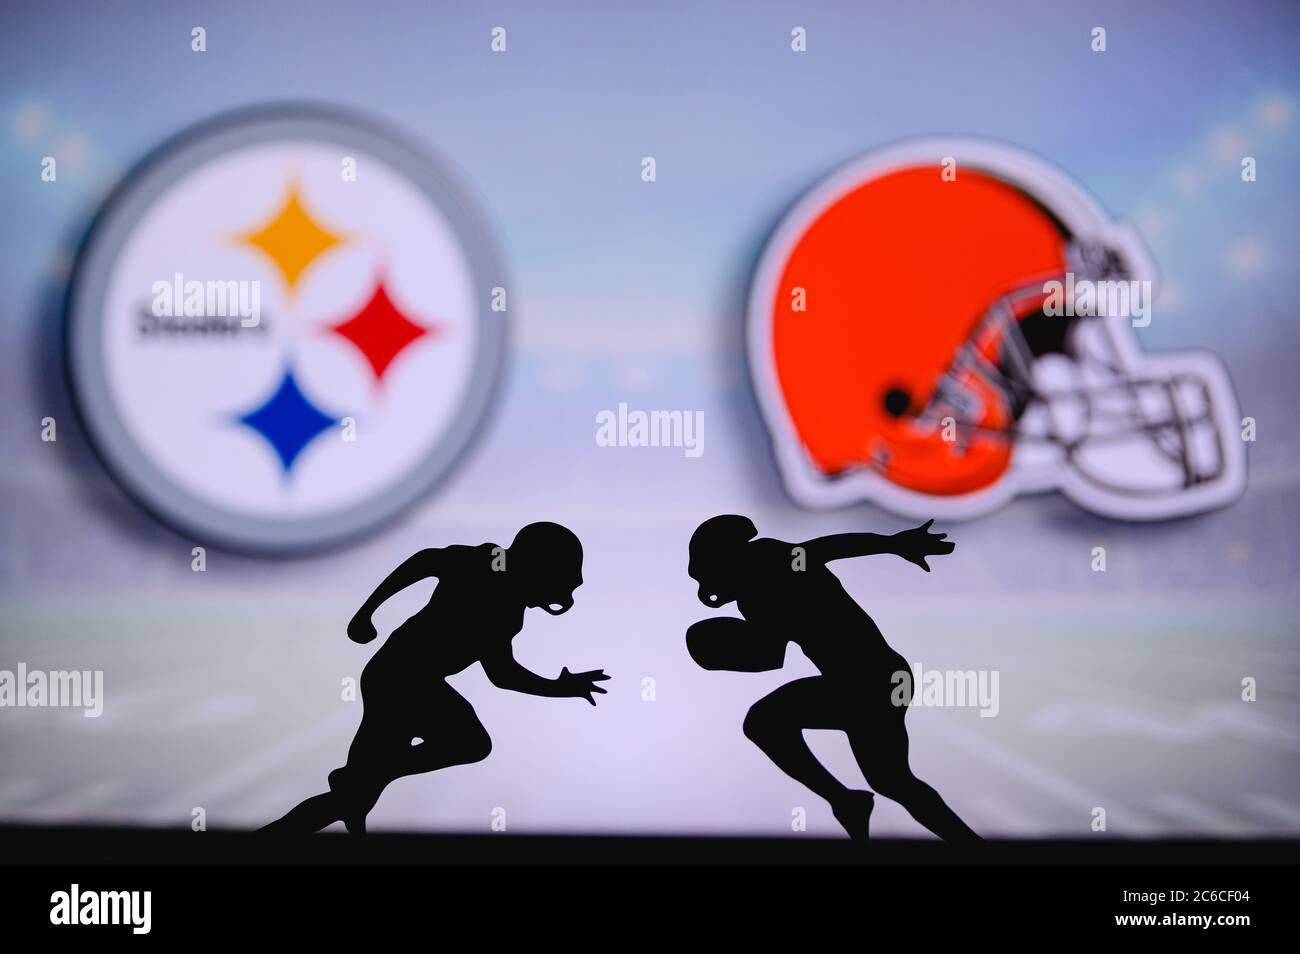 Pittsburgh Steelers contre Cleveland Browns. Affiche NFL Match. Deux joueurs de football américain se font face sur le terrain. Logo clubs en bac Banque D'Images